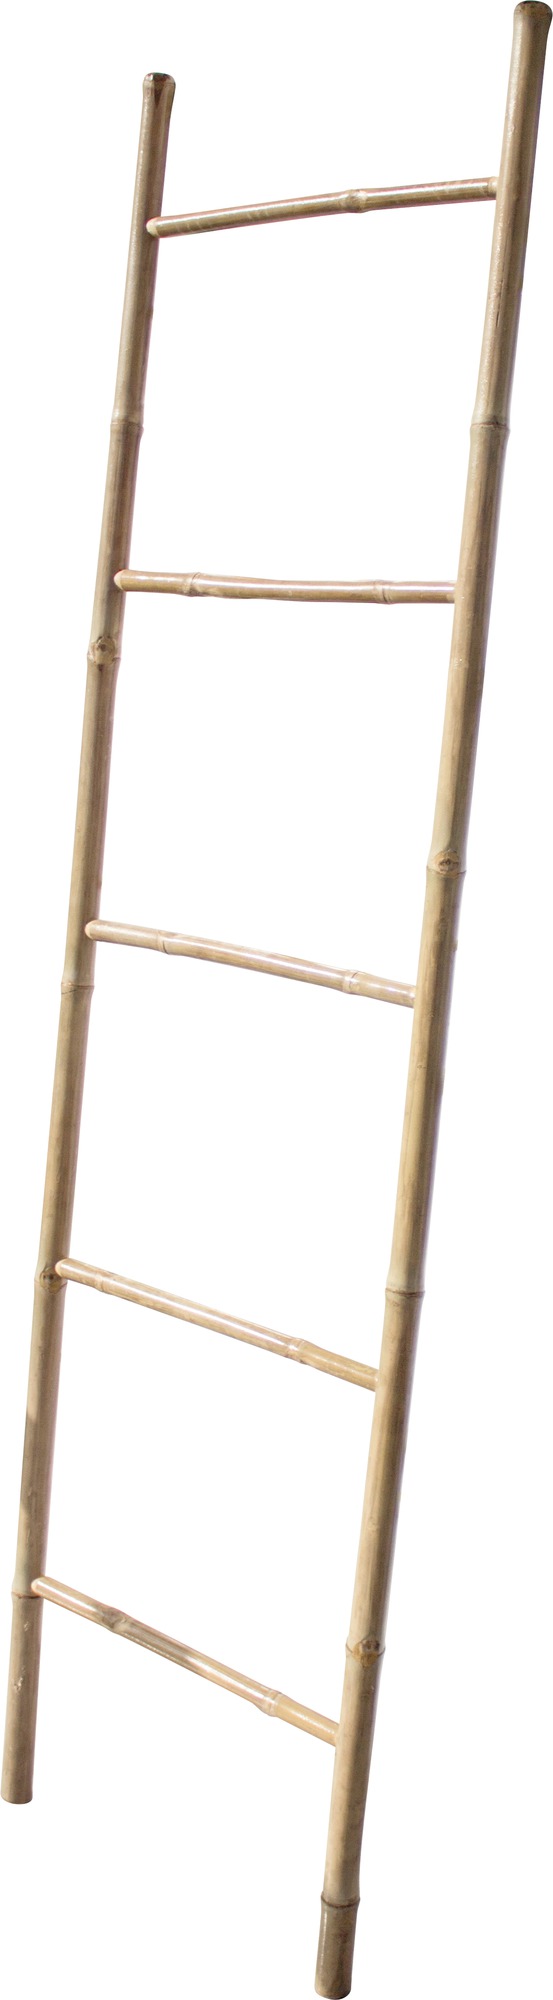 Porte-serviettes échelle bambou naturel Scali Gelco - Hauteur 180 cm - Largeur 50 cm